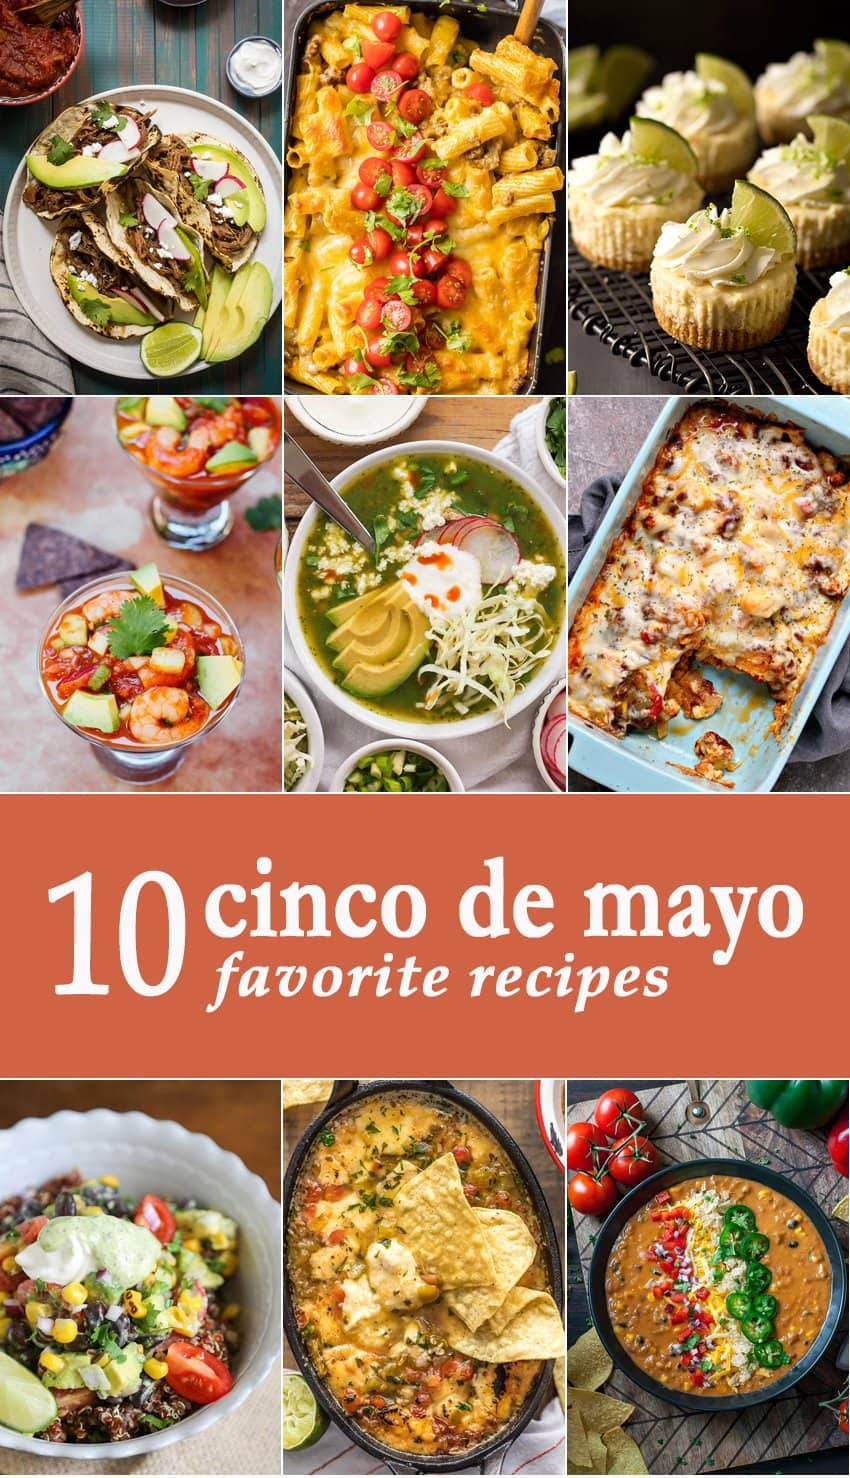 Cinco De Mayo Food Recipe
 10 Favorite Cinco de Mayo Recipes The Cookie Rookie